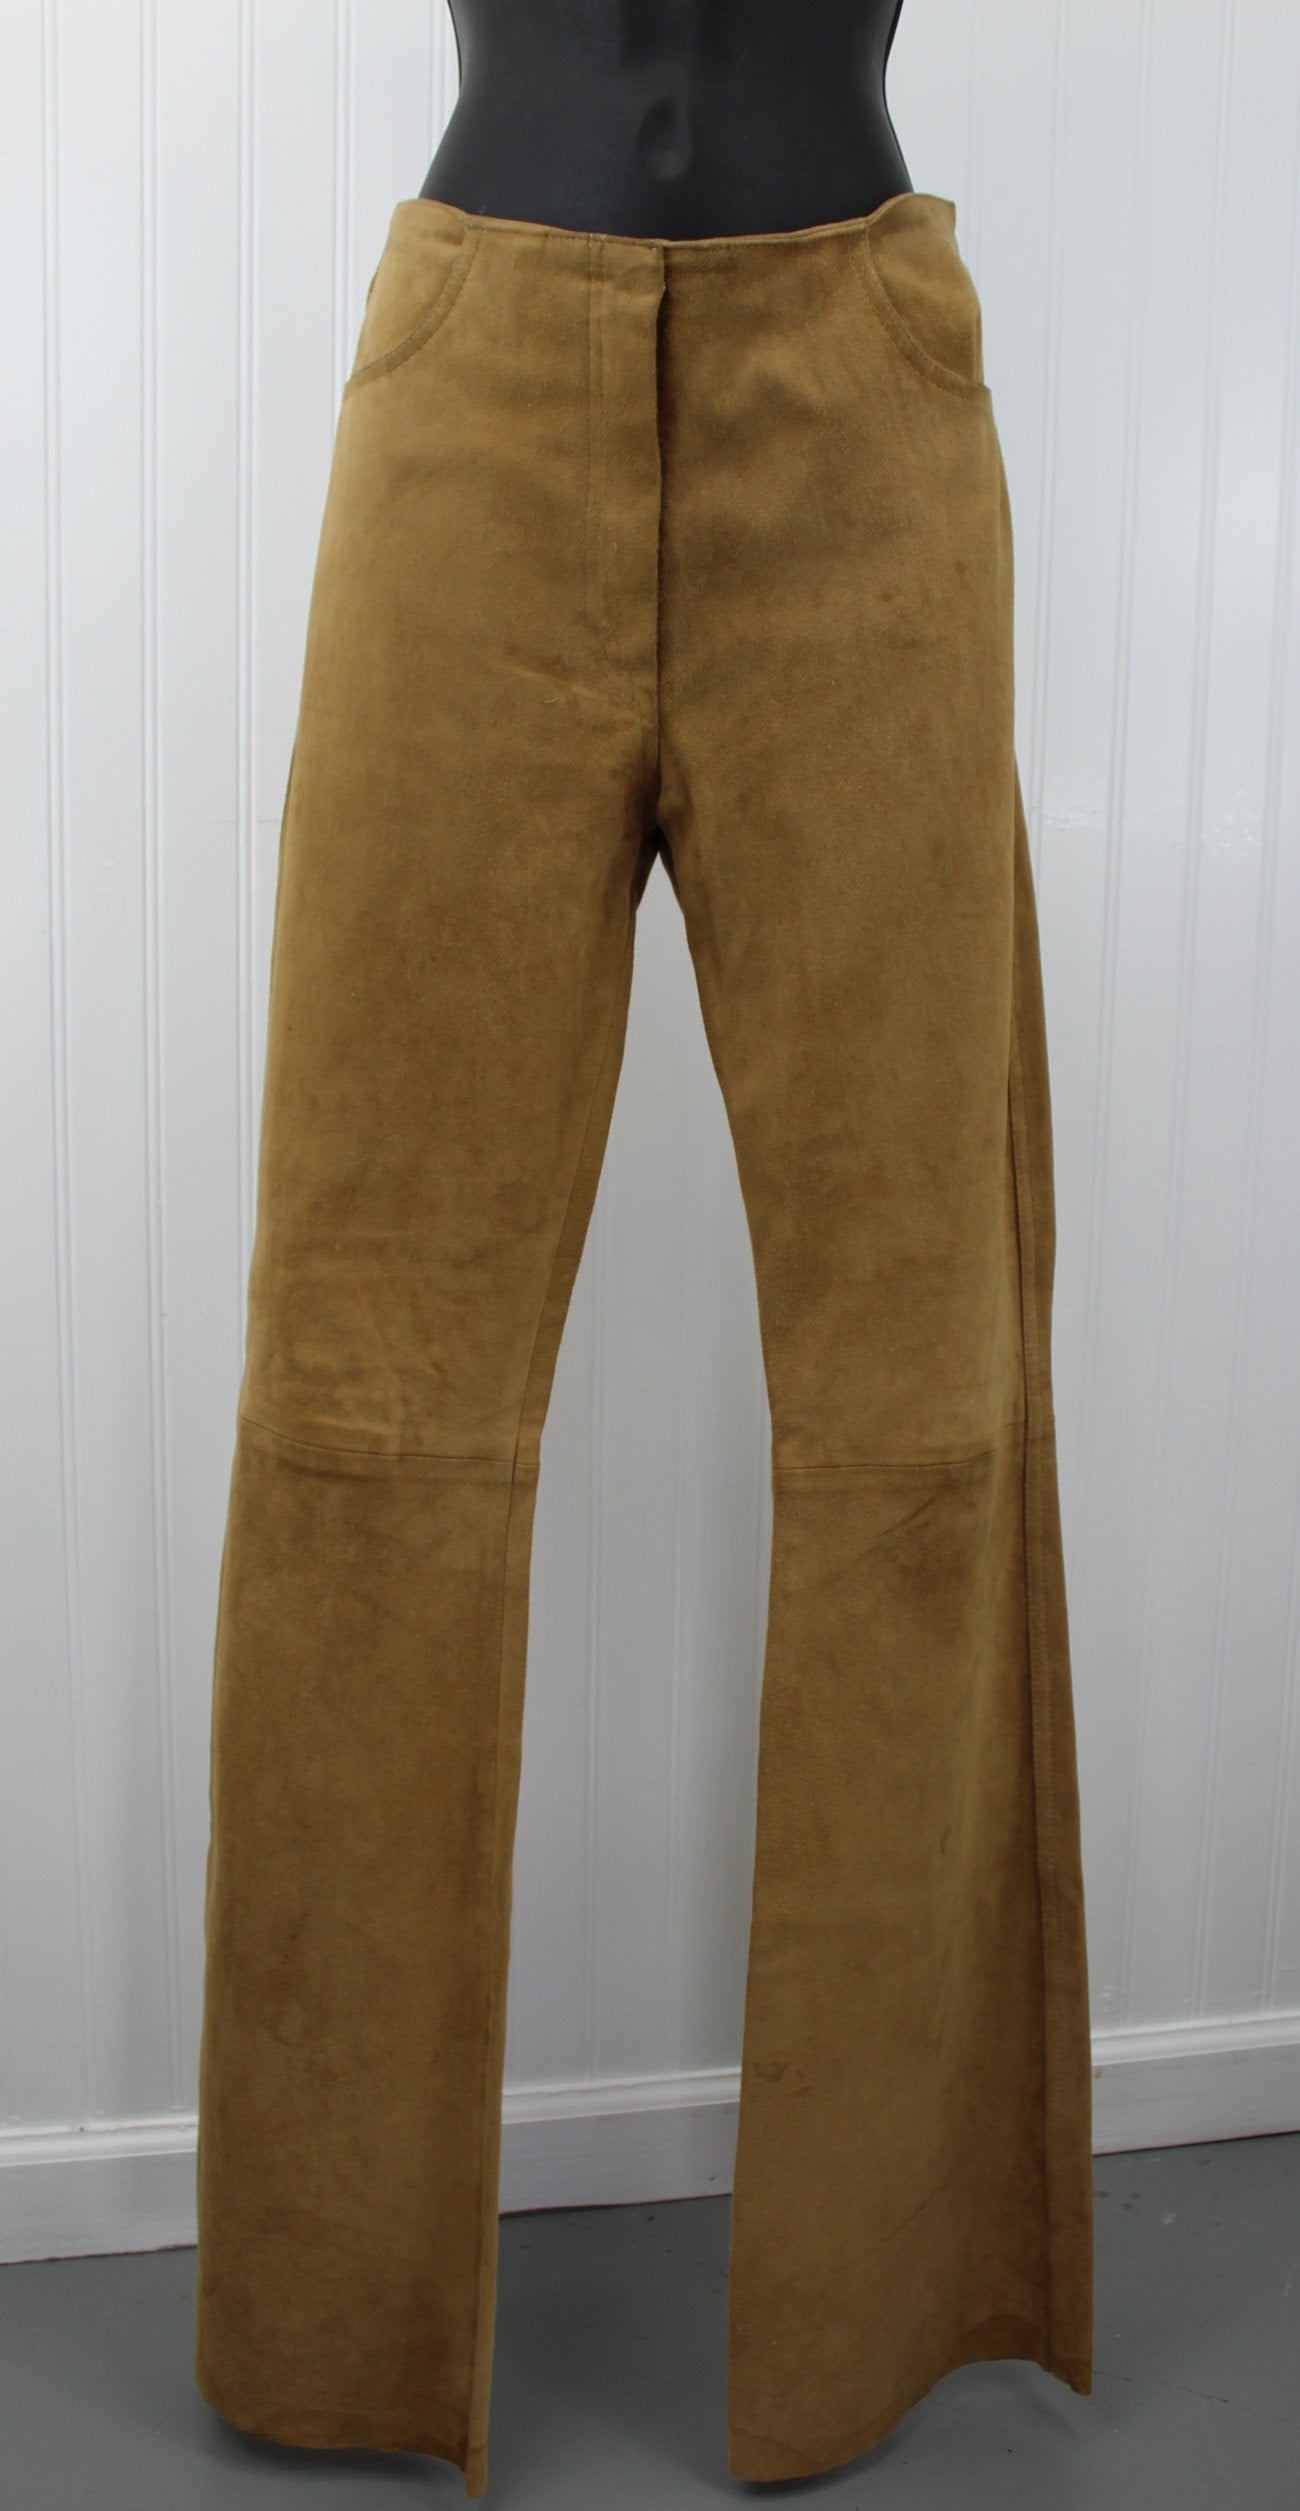 Jean Claude Jitrois France Vintage Womens Suede Leather Pants - Flare Leg Chevre Velour Size 40  - 32" Waist hippie flares sexy